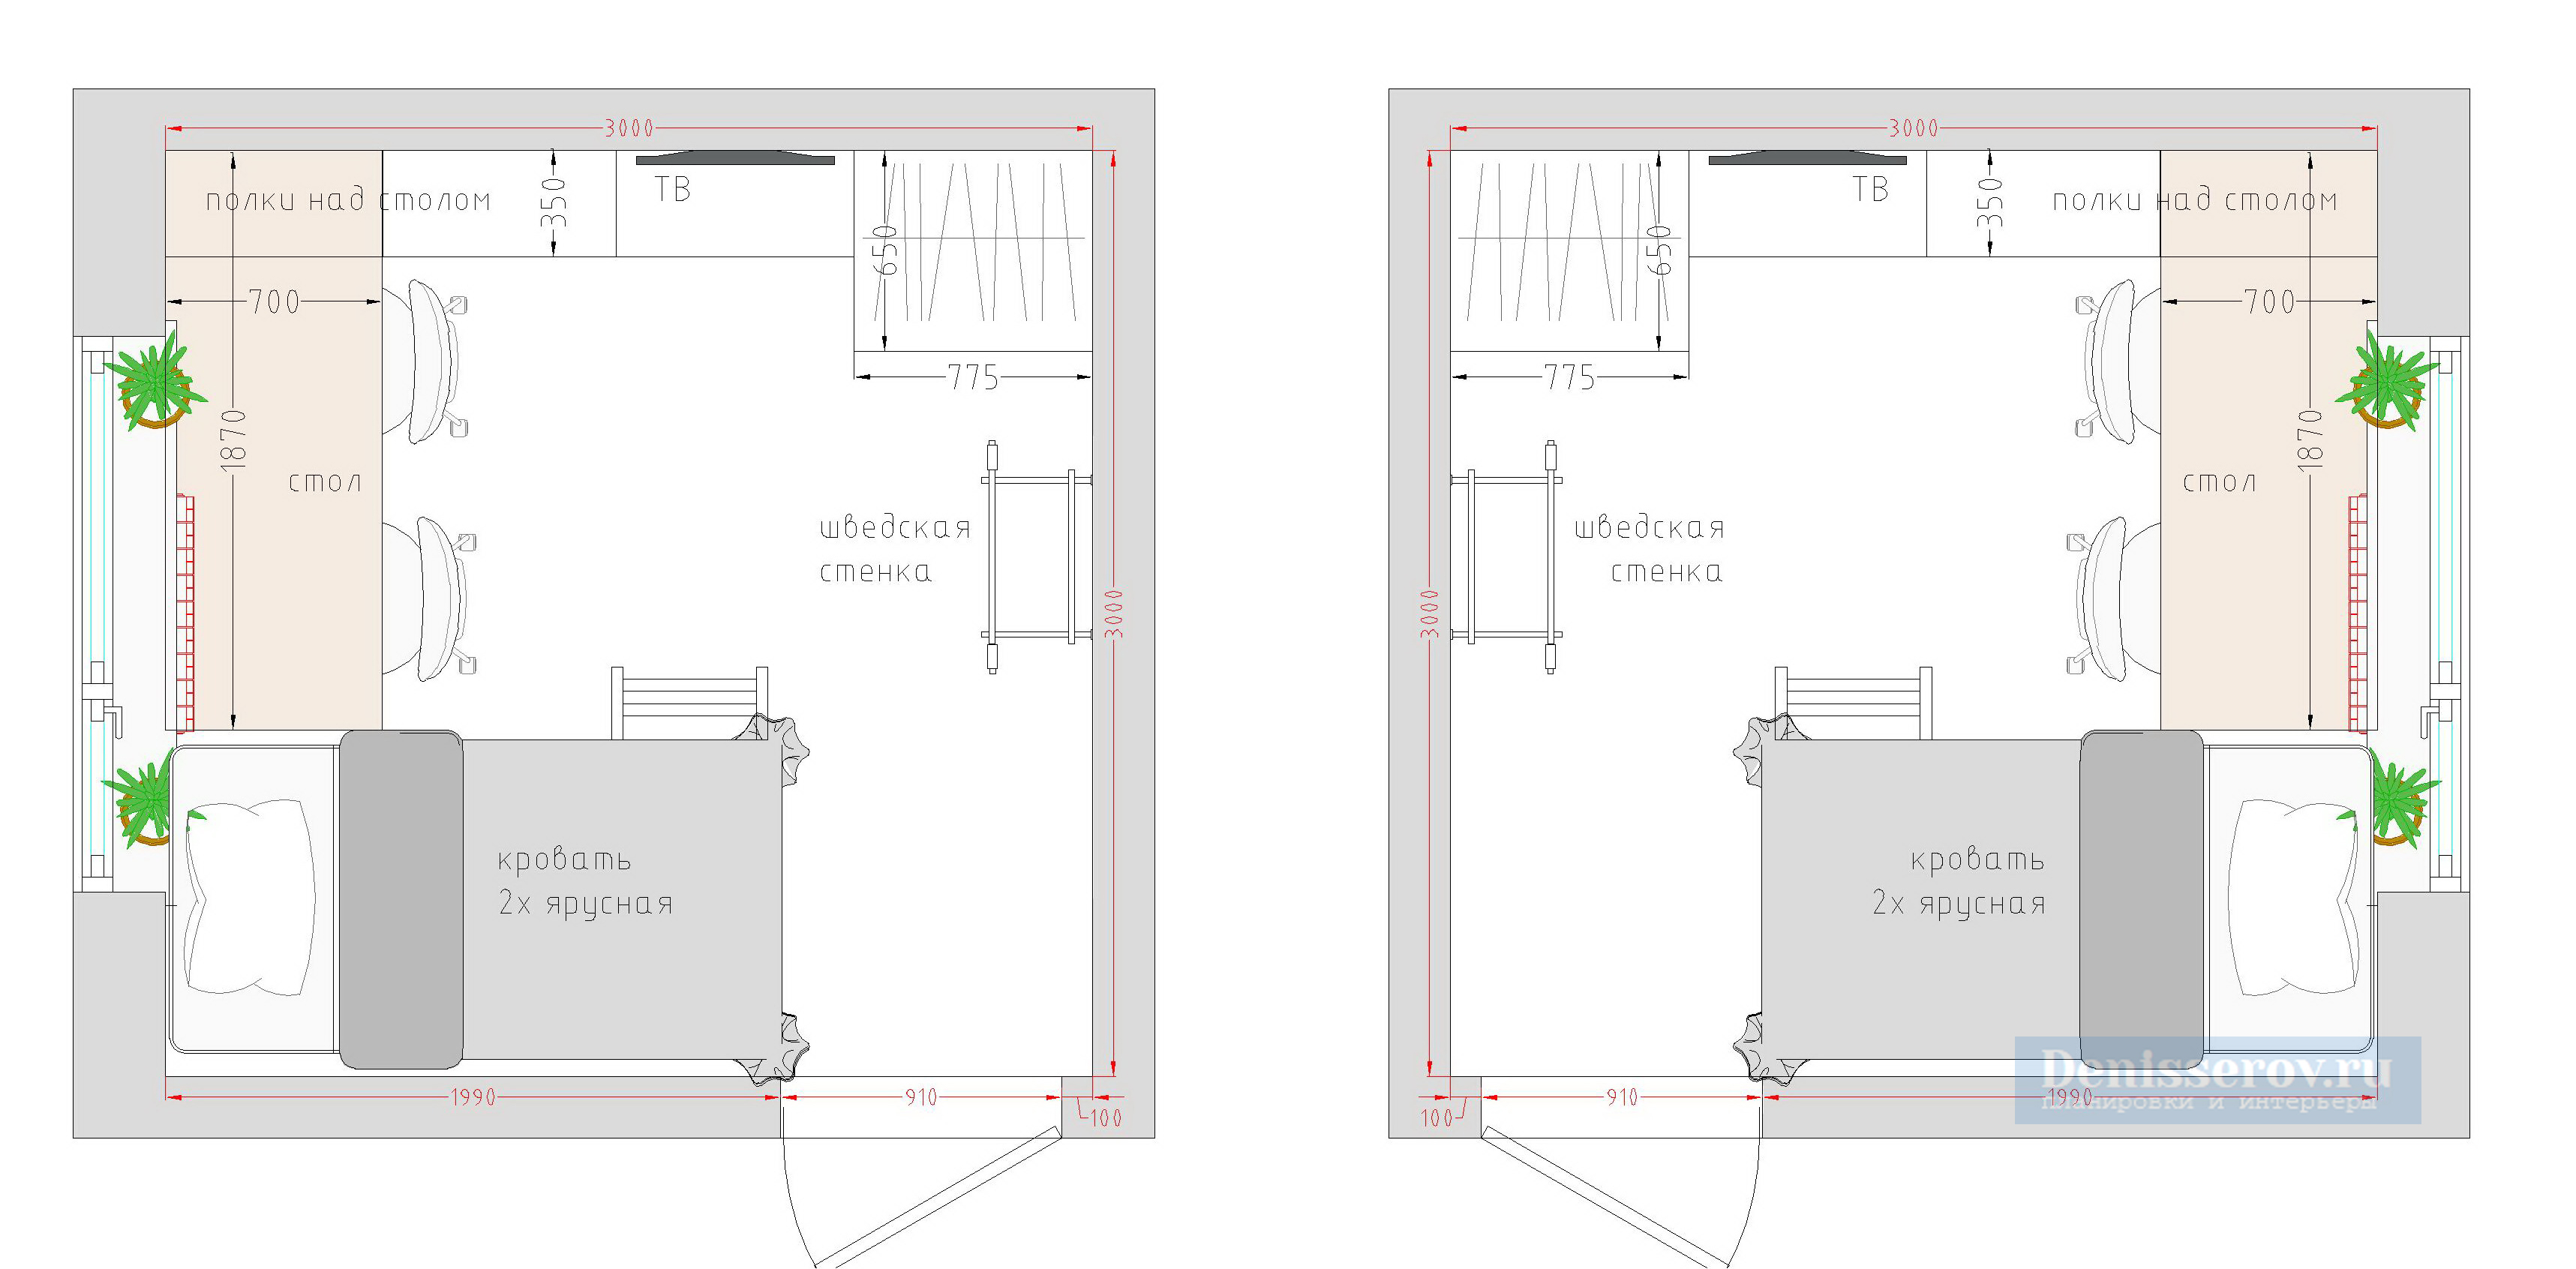 планировка детской комнаты 9 кв м для двоих детей с размерами